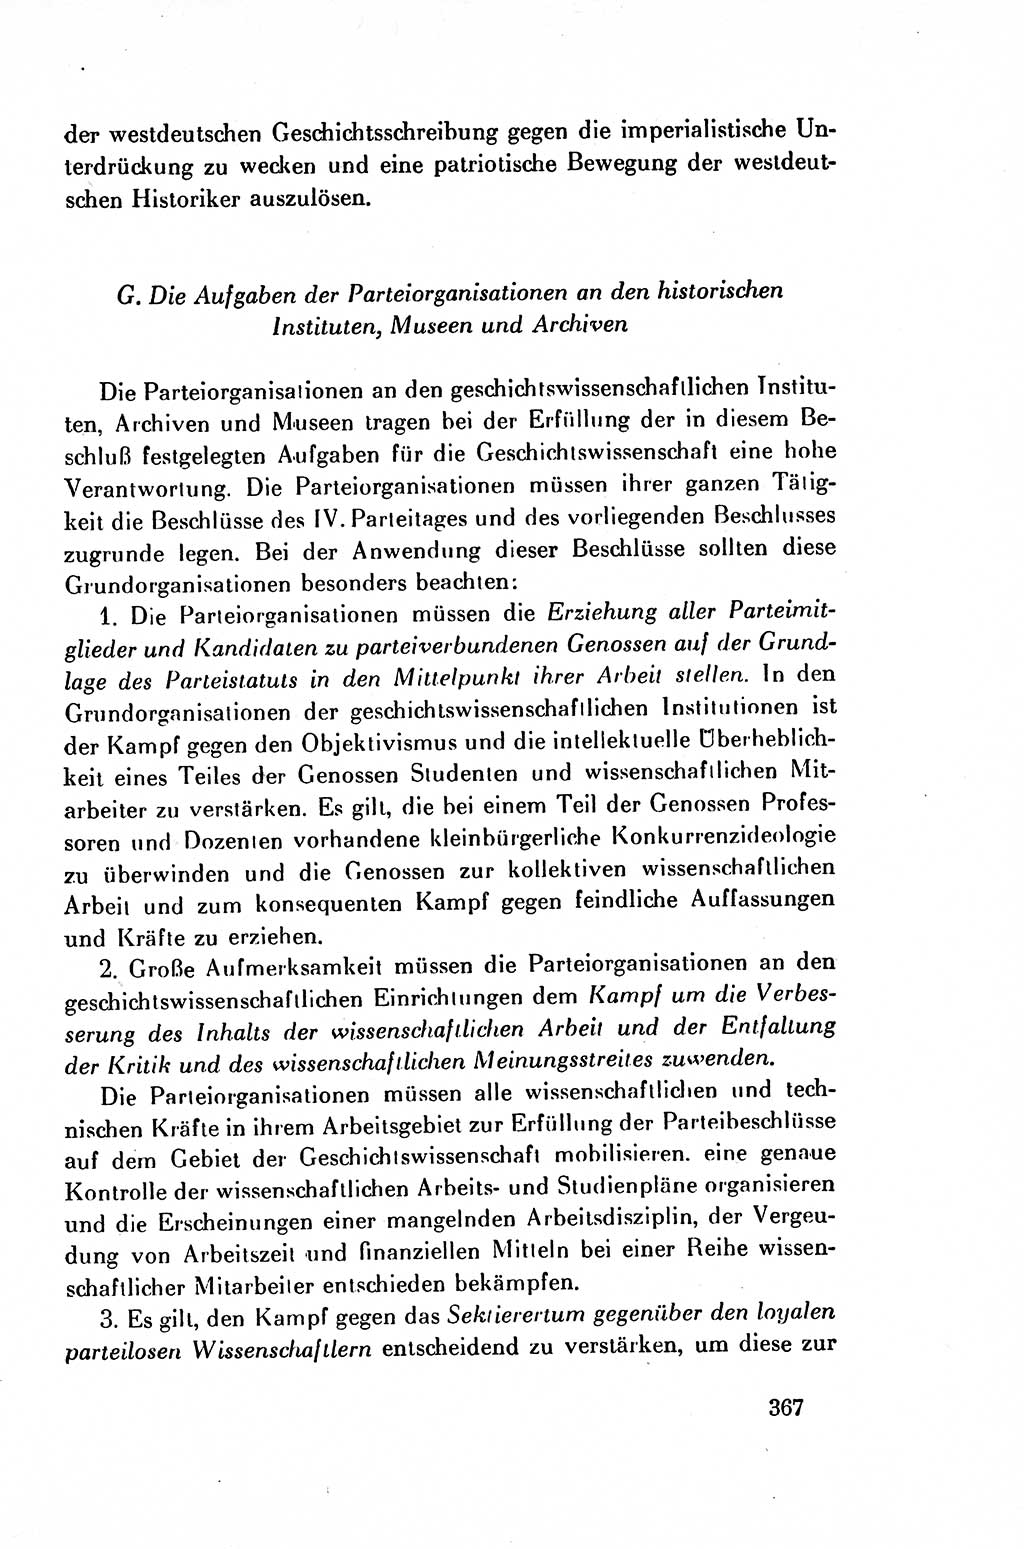 Dokumente der Sozialistischen Einheitspartei Deutschlands (SED) [Deutsche Demokratische Republik (DDR)] 1954-1955, Seite 367 (Dok. SED DDR 1954-1955, S. 367)